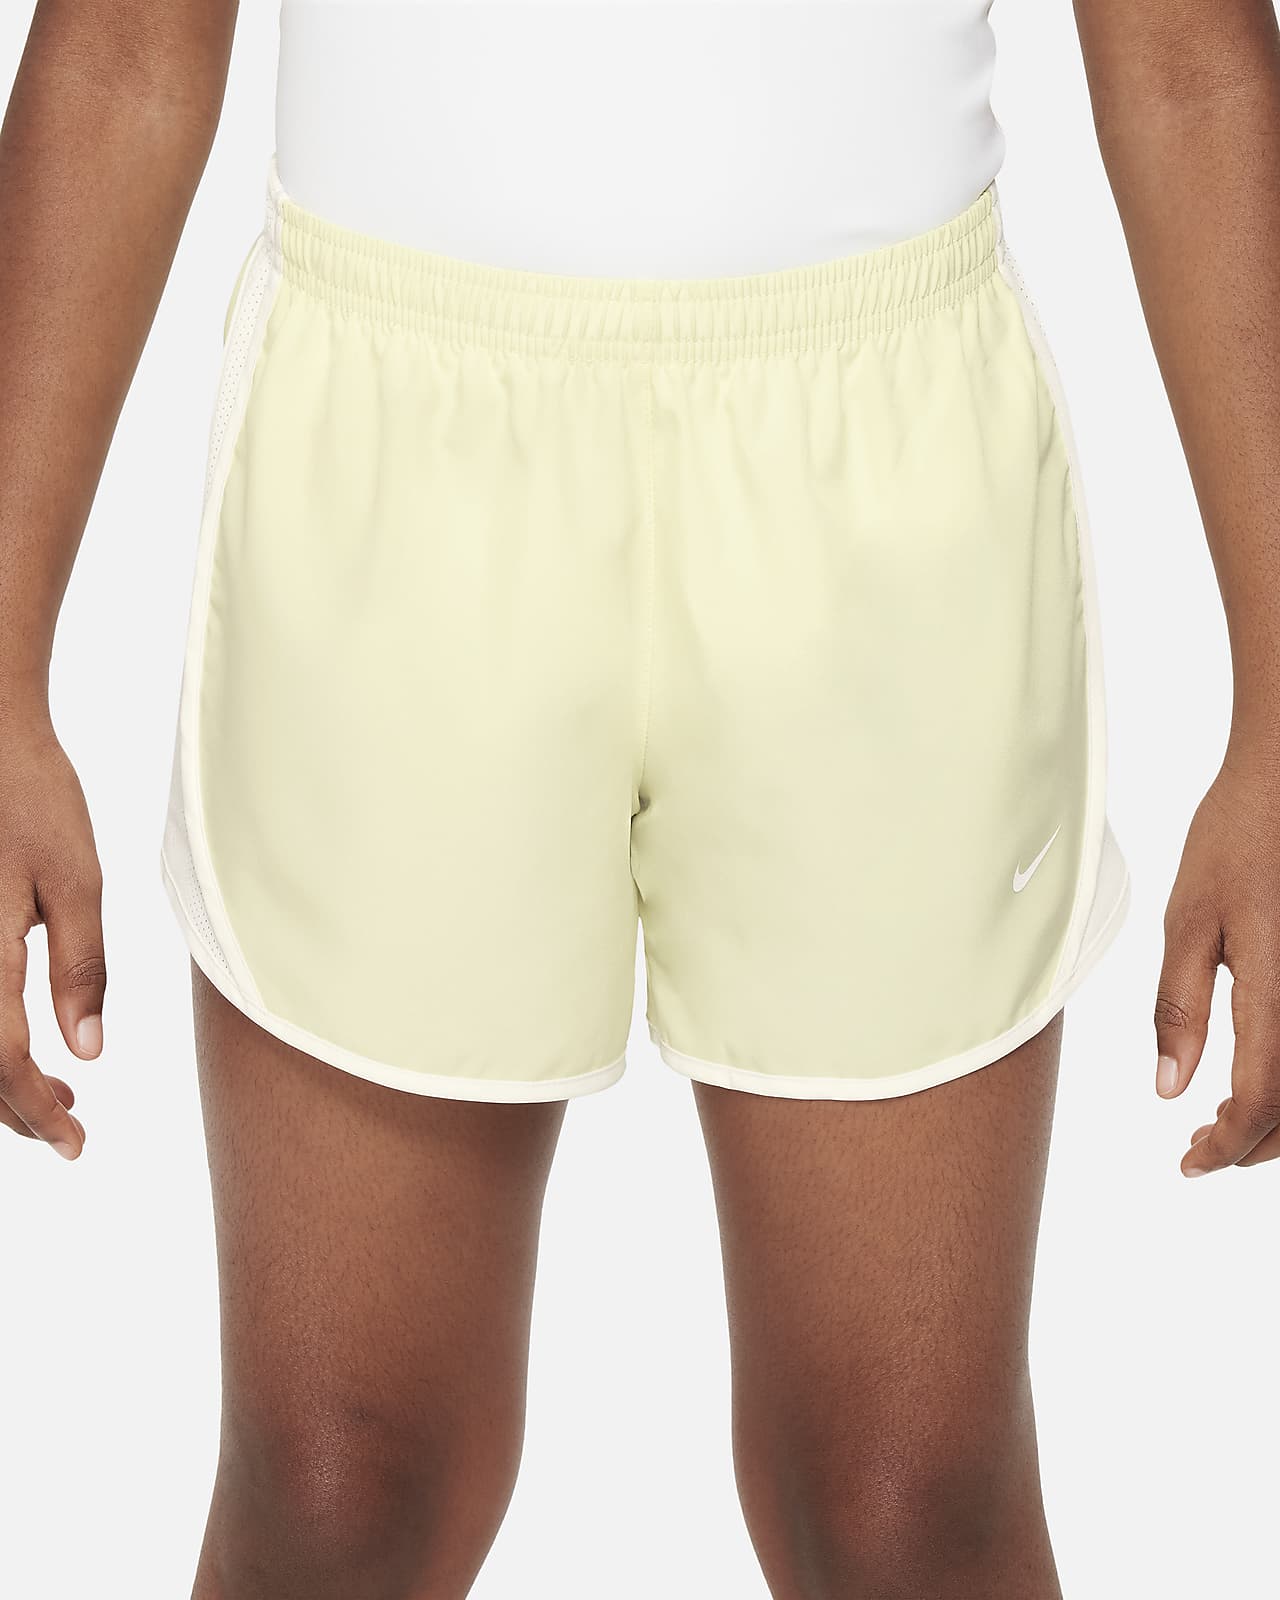 Girls Nike Athletic Shorts - Youth Size L